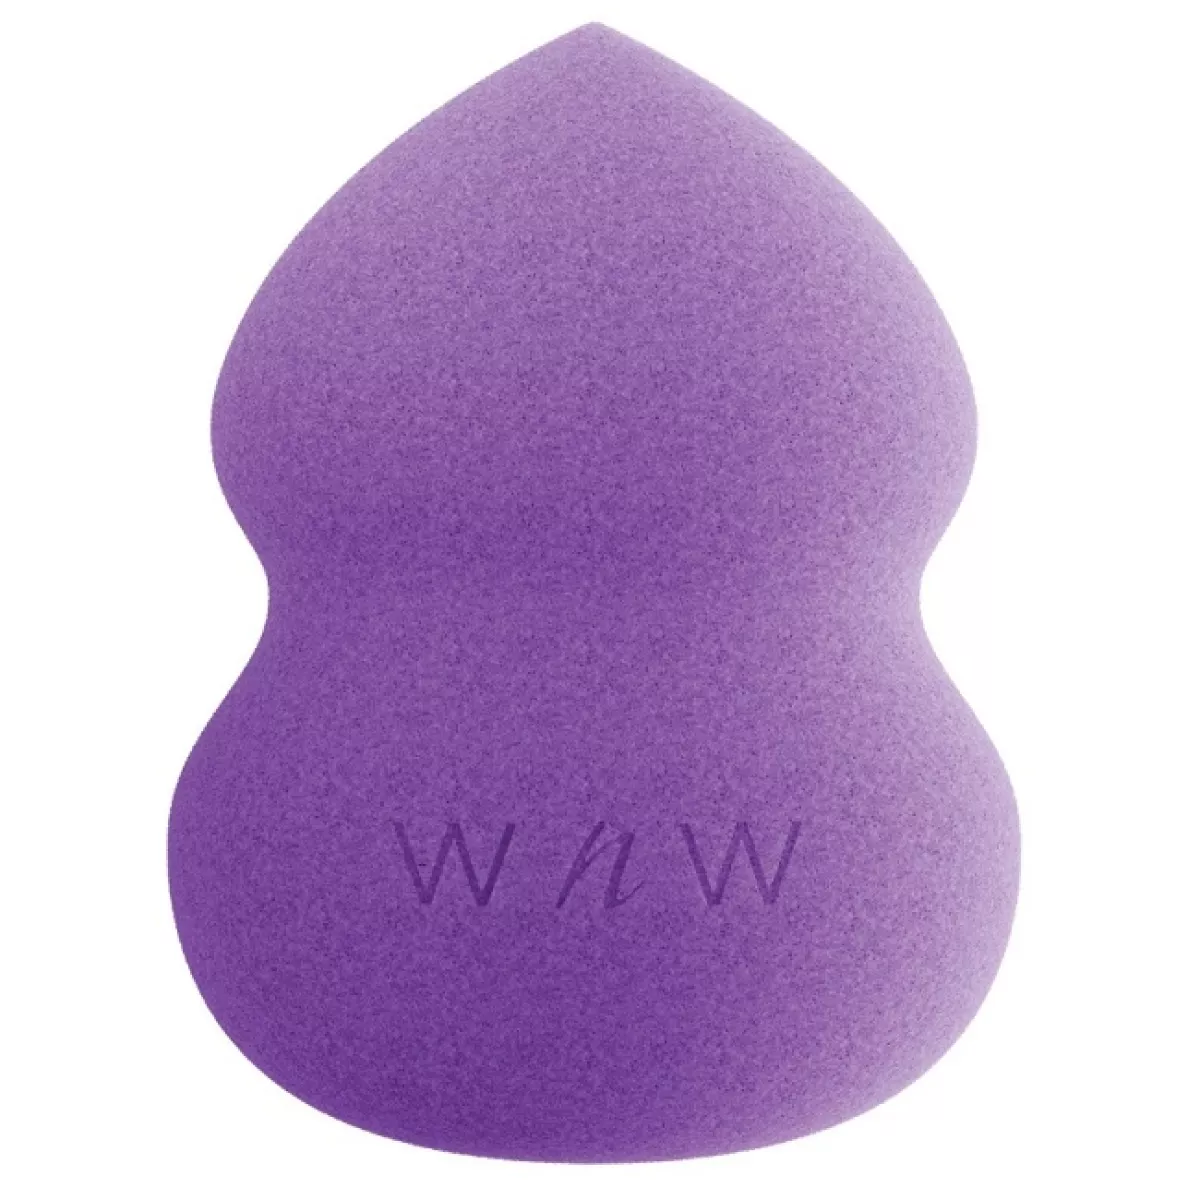 #2 - Wet n Wild - Hourglass Makeup Sponge - Purple